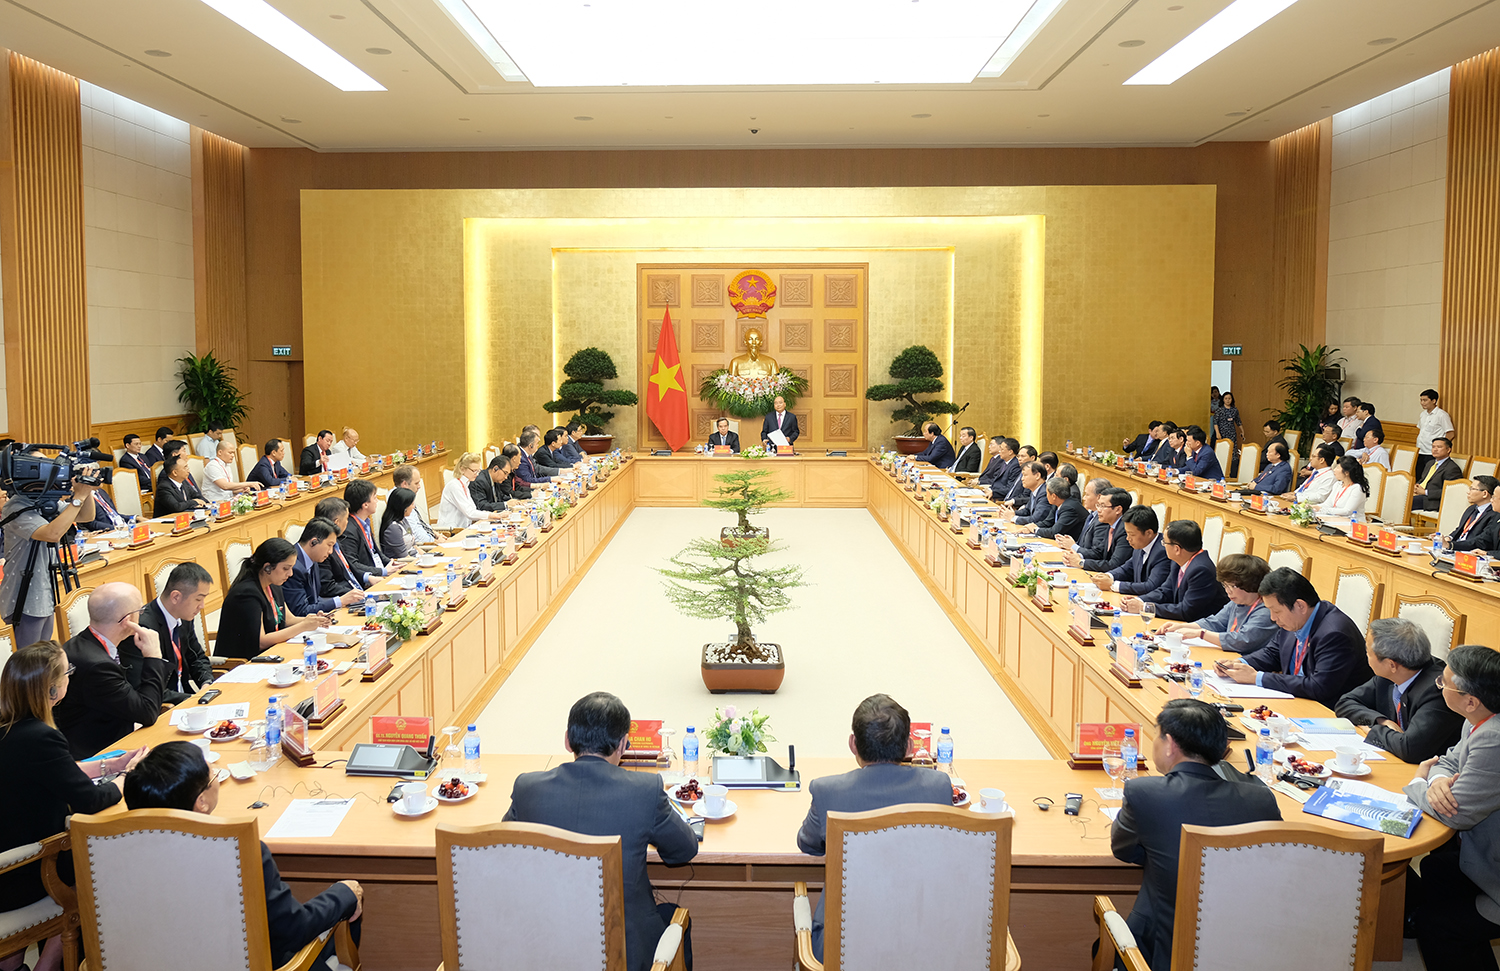 Thủ tướng Nguyễn Xuân Phúc gặp mặt, làm việc với lãnh đạo các tập đoàn, diễn giả của Diễn đàn cấp cao “Tầm nhìn và chiến lược phát triển đột phá trong bối cảnh cuộc cách mạng công nghiệp lần thứ 4”.